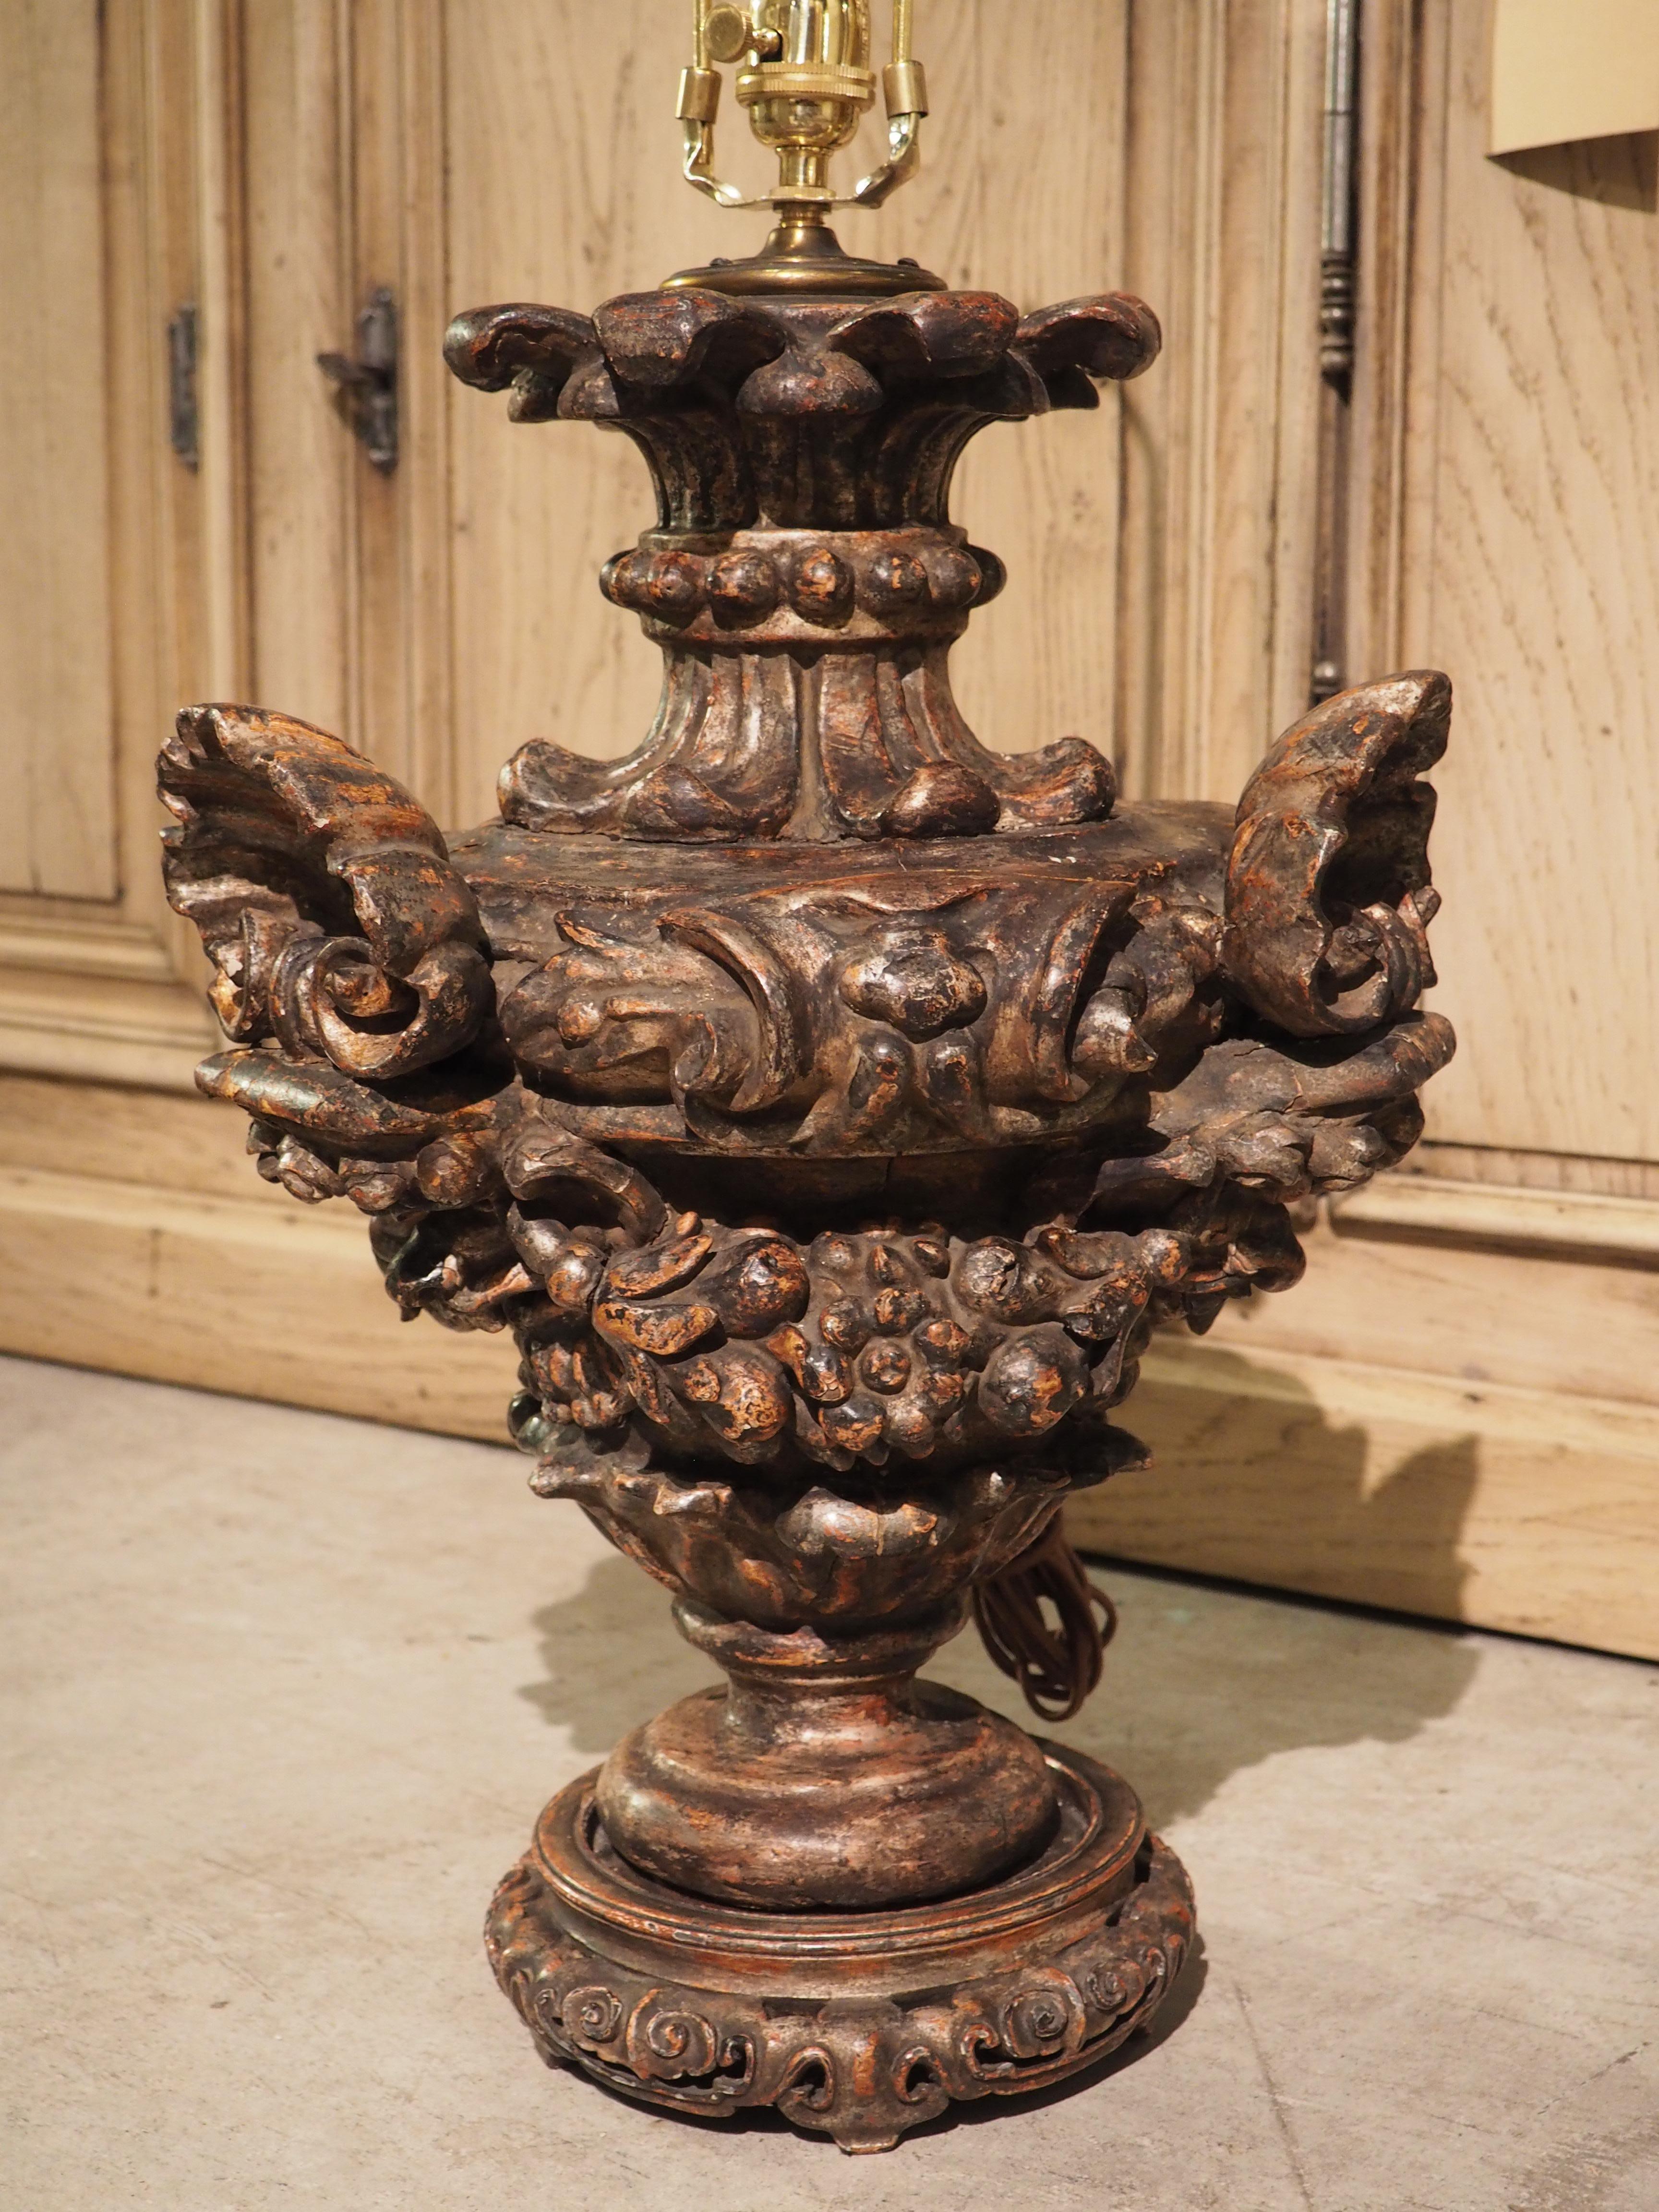 Cette urne polychrome très sculptée datant des années 1700 a été transformée en une lampe de table unique. L'abat-jour crème est orné sur le bord d'une bande de volutes en S de couleur noire. Trois coquilles festonnées et trois volutes, en